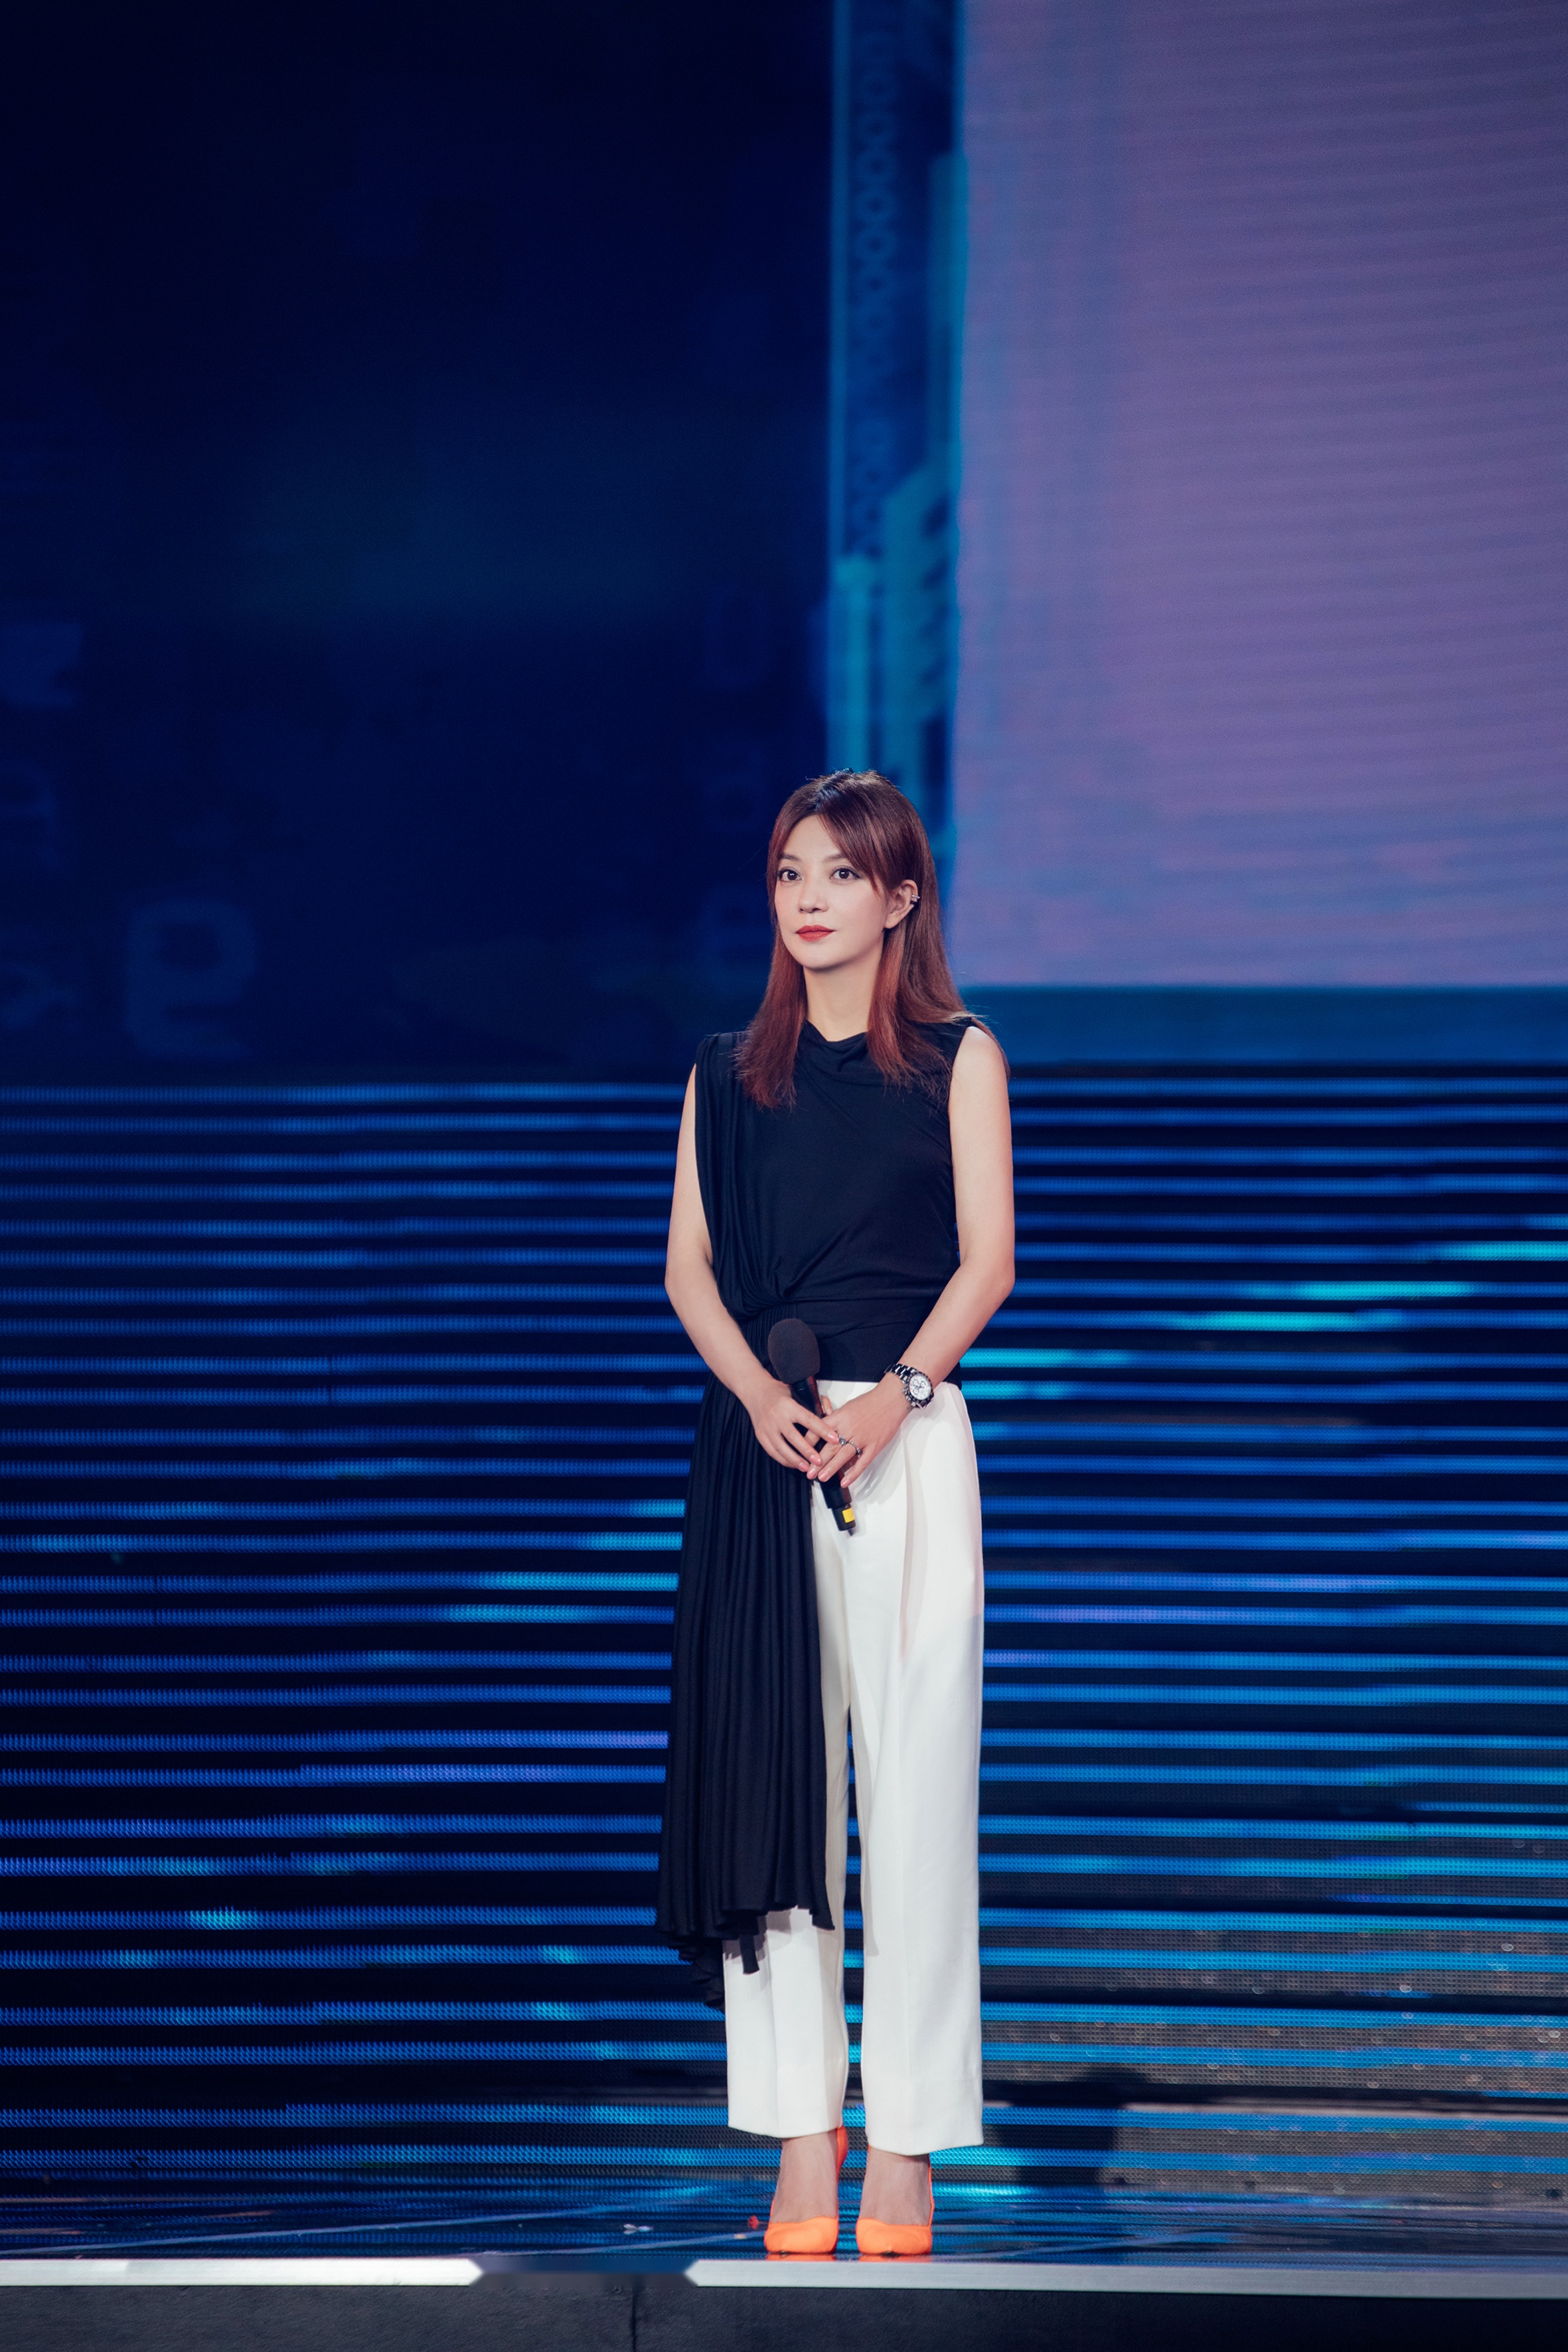 赵薇亮相丝绸之路国际电影节,颁发金丝路传媒荣誉年度最受关注女演员